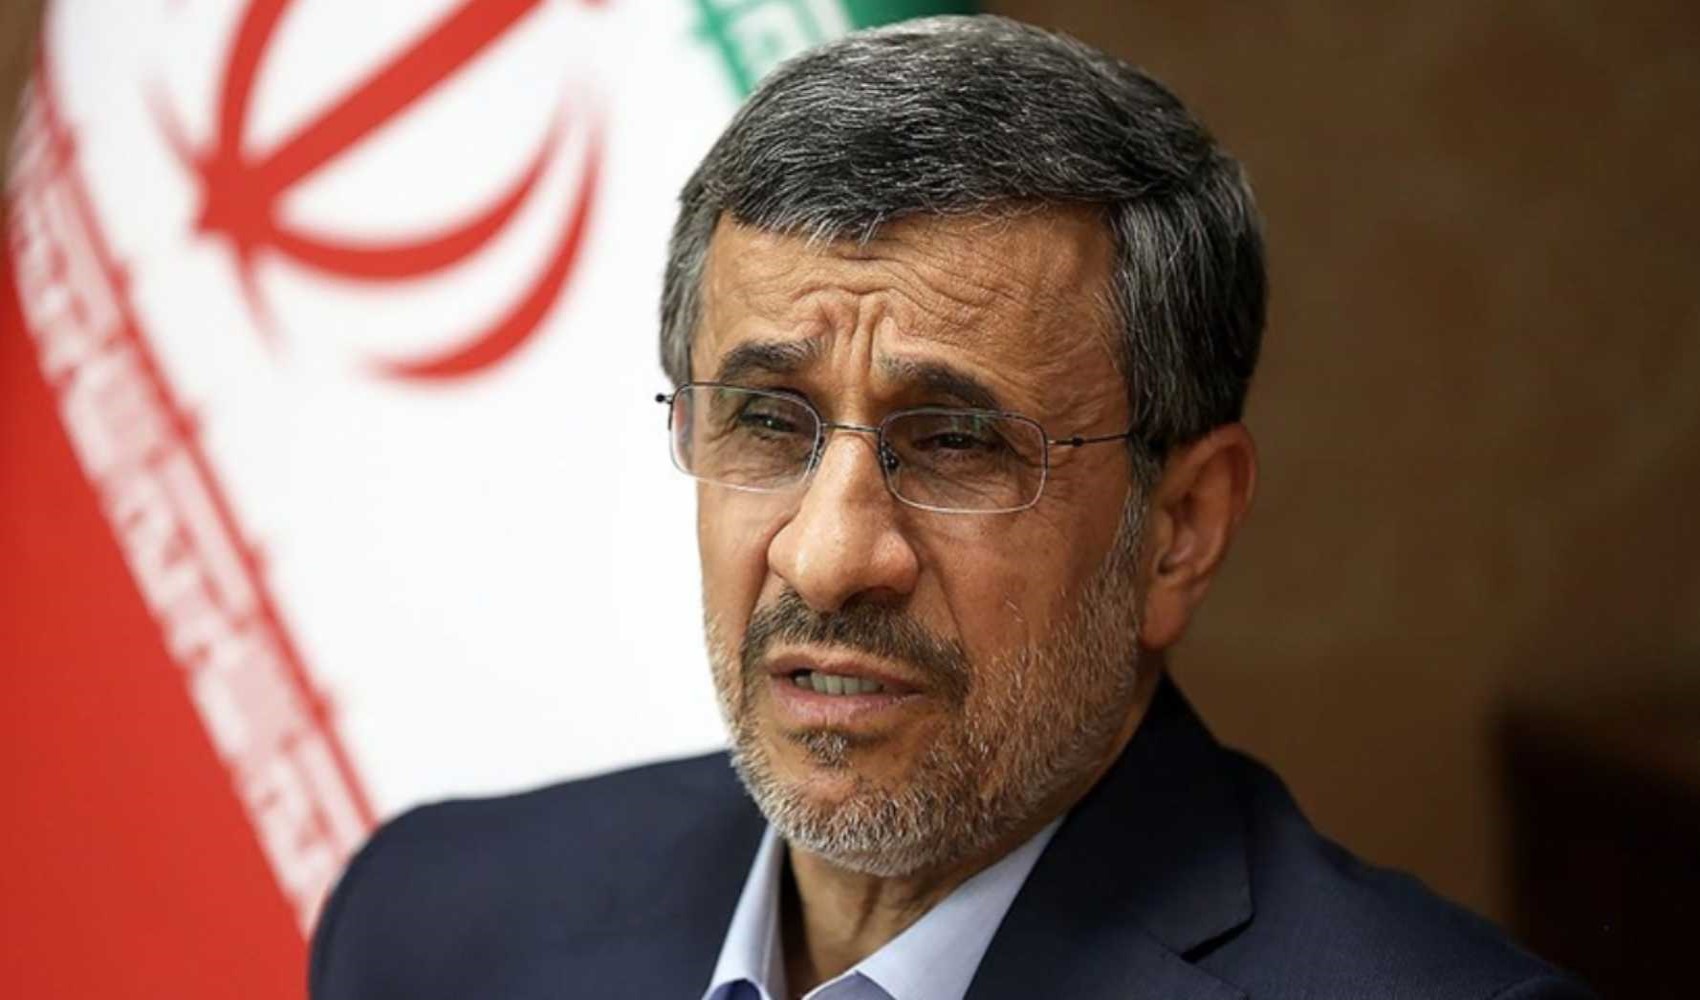 Eski İran Cumhurbaşkanı Ahmedinejad seçimlerde aday olabileceğini açıkladı